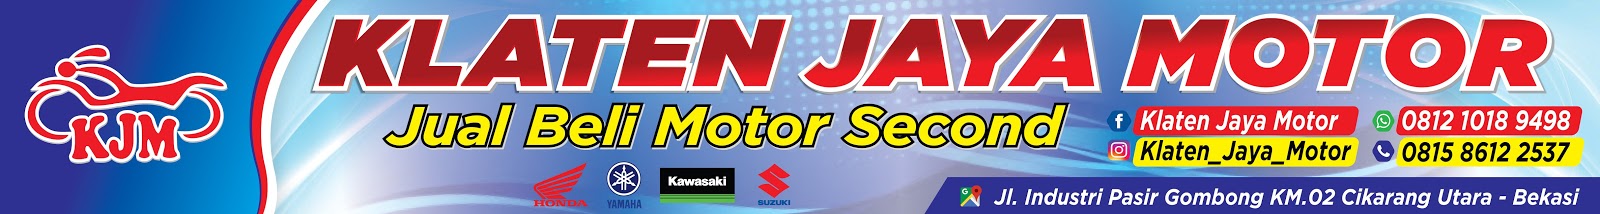  Banner  Motor Klaten Jaya Motor Agen87